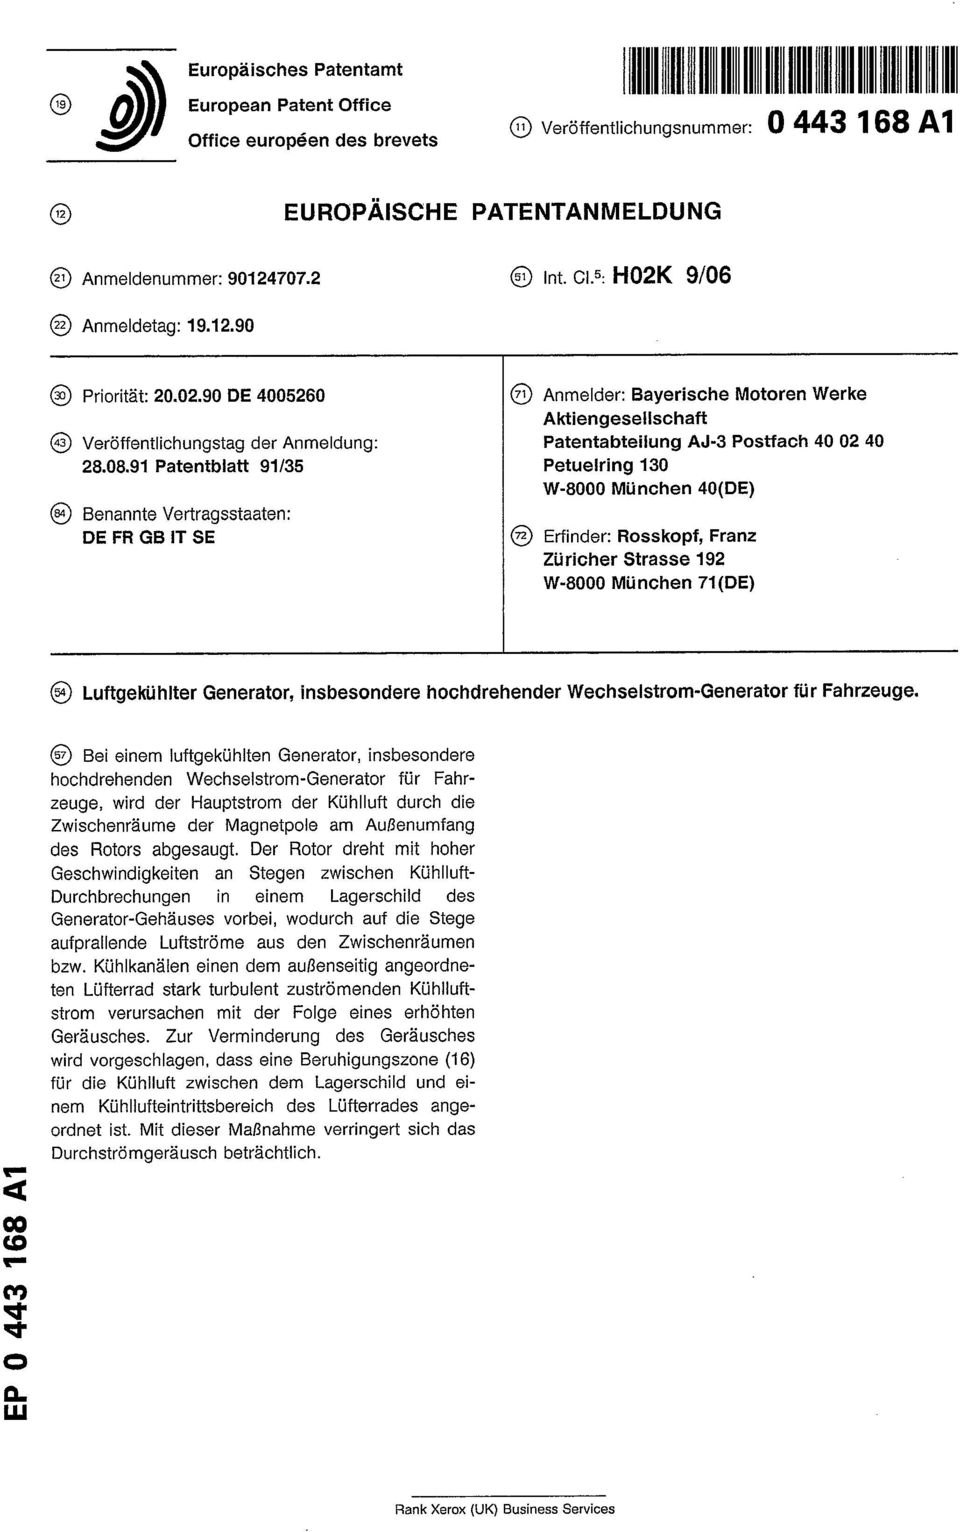 08.91 Patentblatt 91/35 Petueiring 130 W-8000 München 40(DE) Benannte Vertragsstaaten: DE FR GB IT SE Erfinder: Rosskopf, Franz Züricher Strasse 192 W-8000 München 71 (DE) Luftgekühlter Generator,